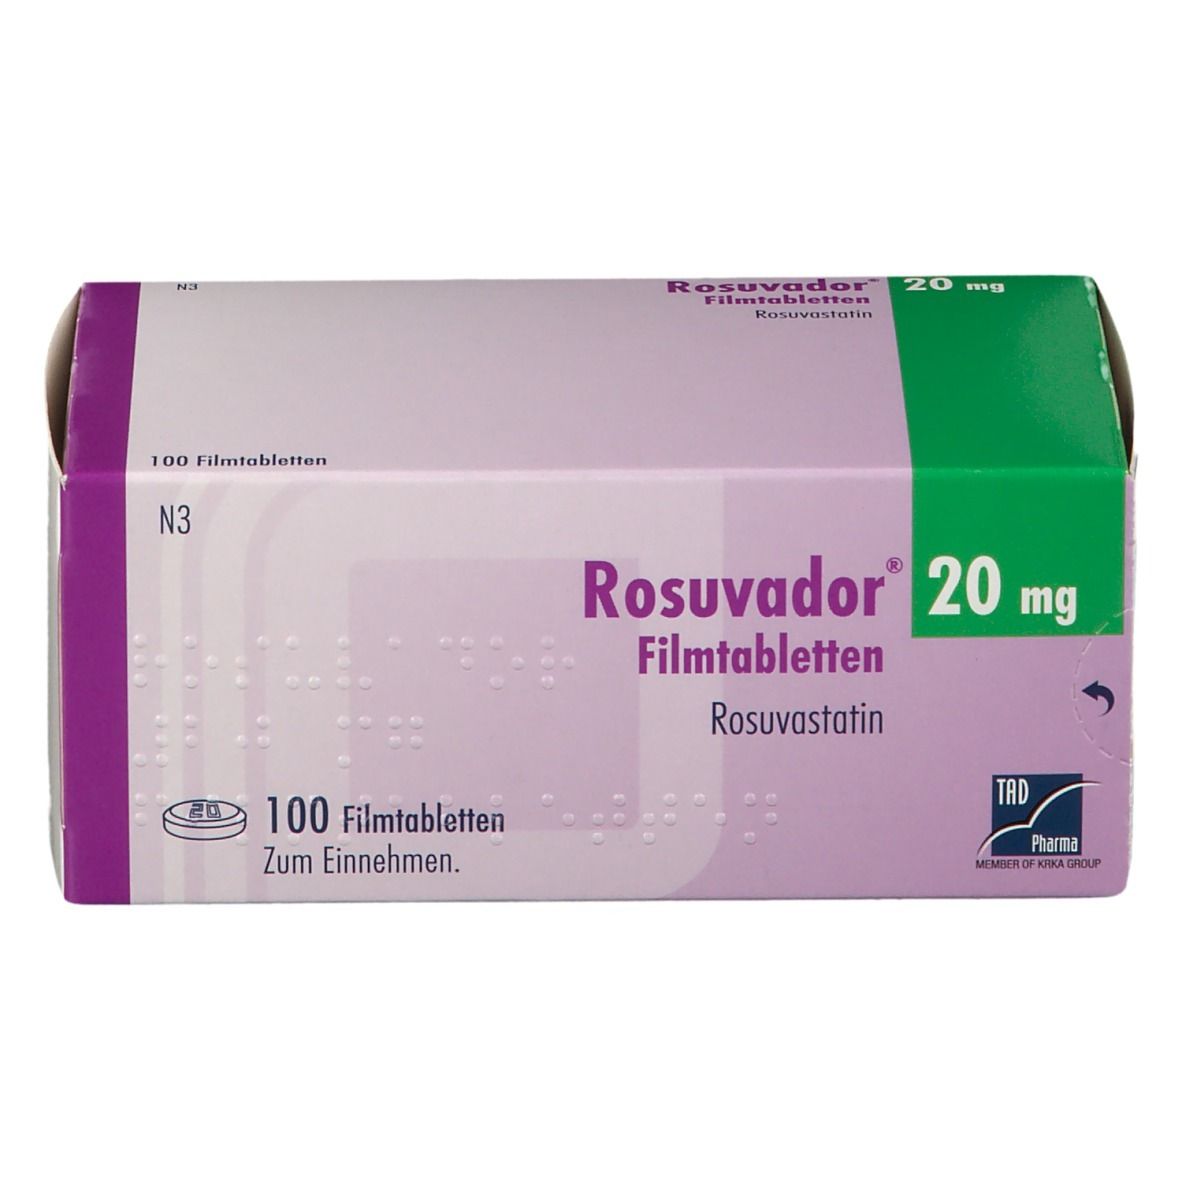 Rosudavor® 20 mg